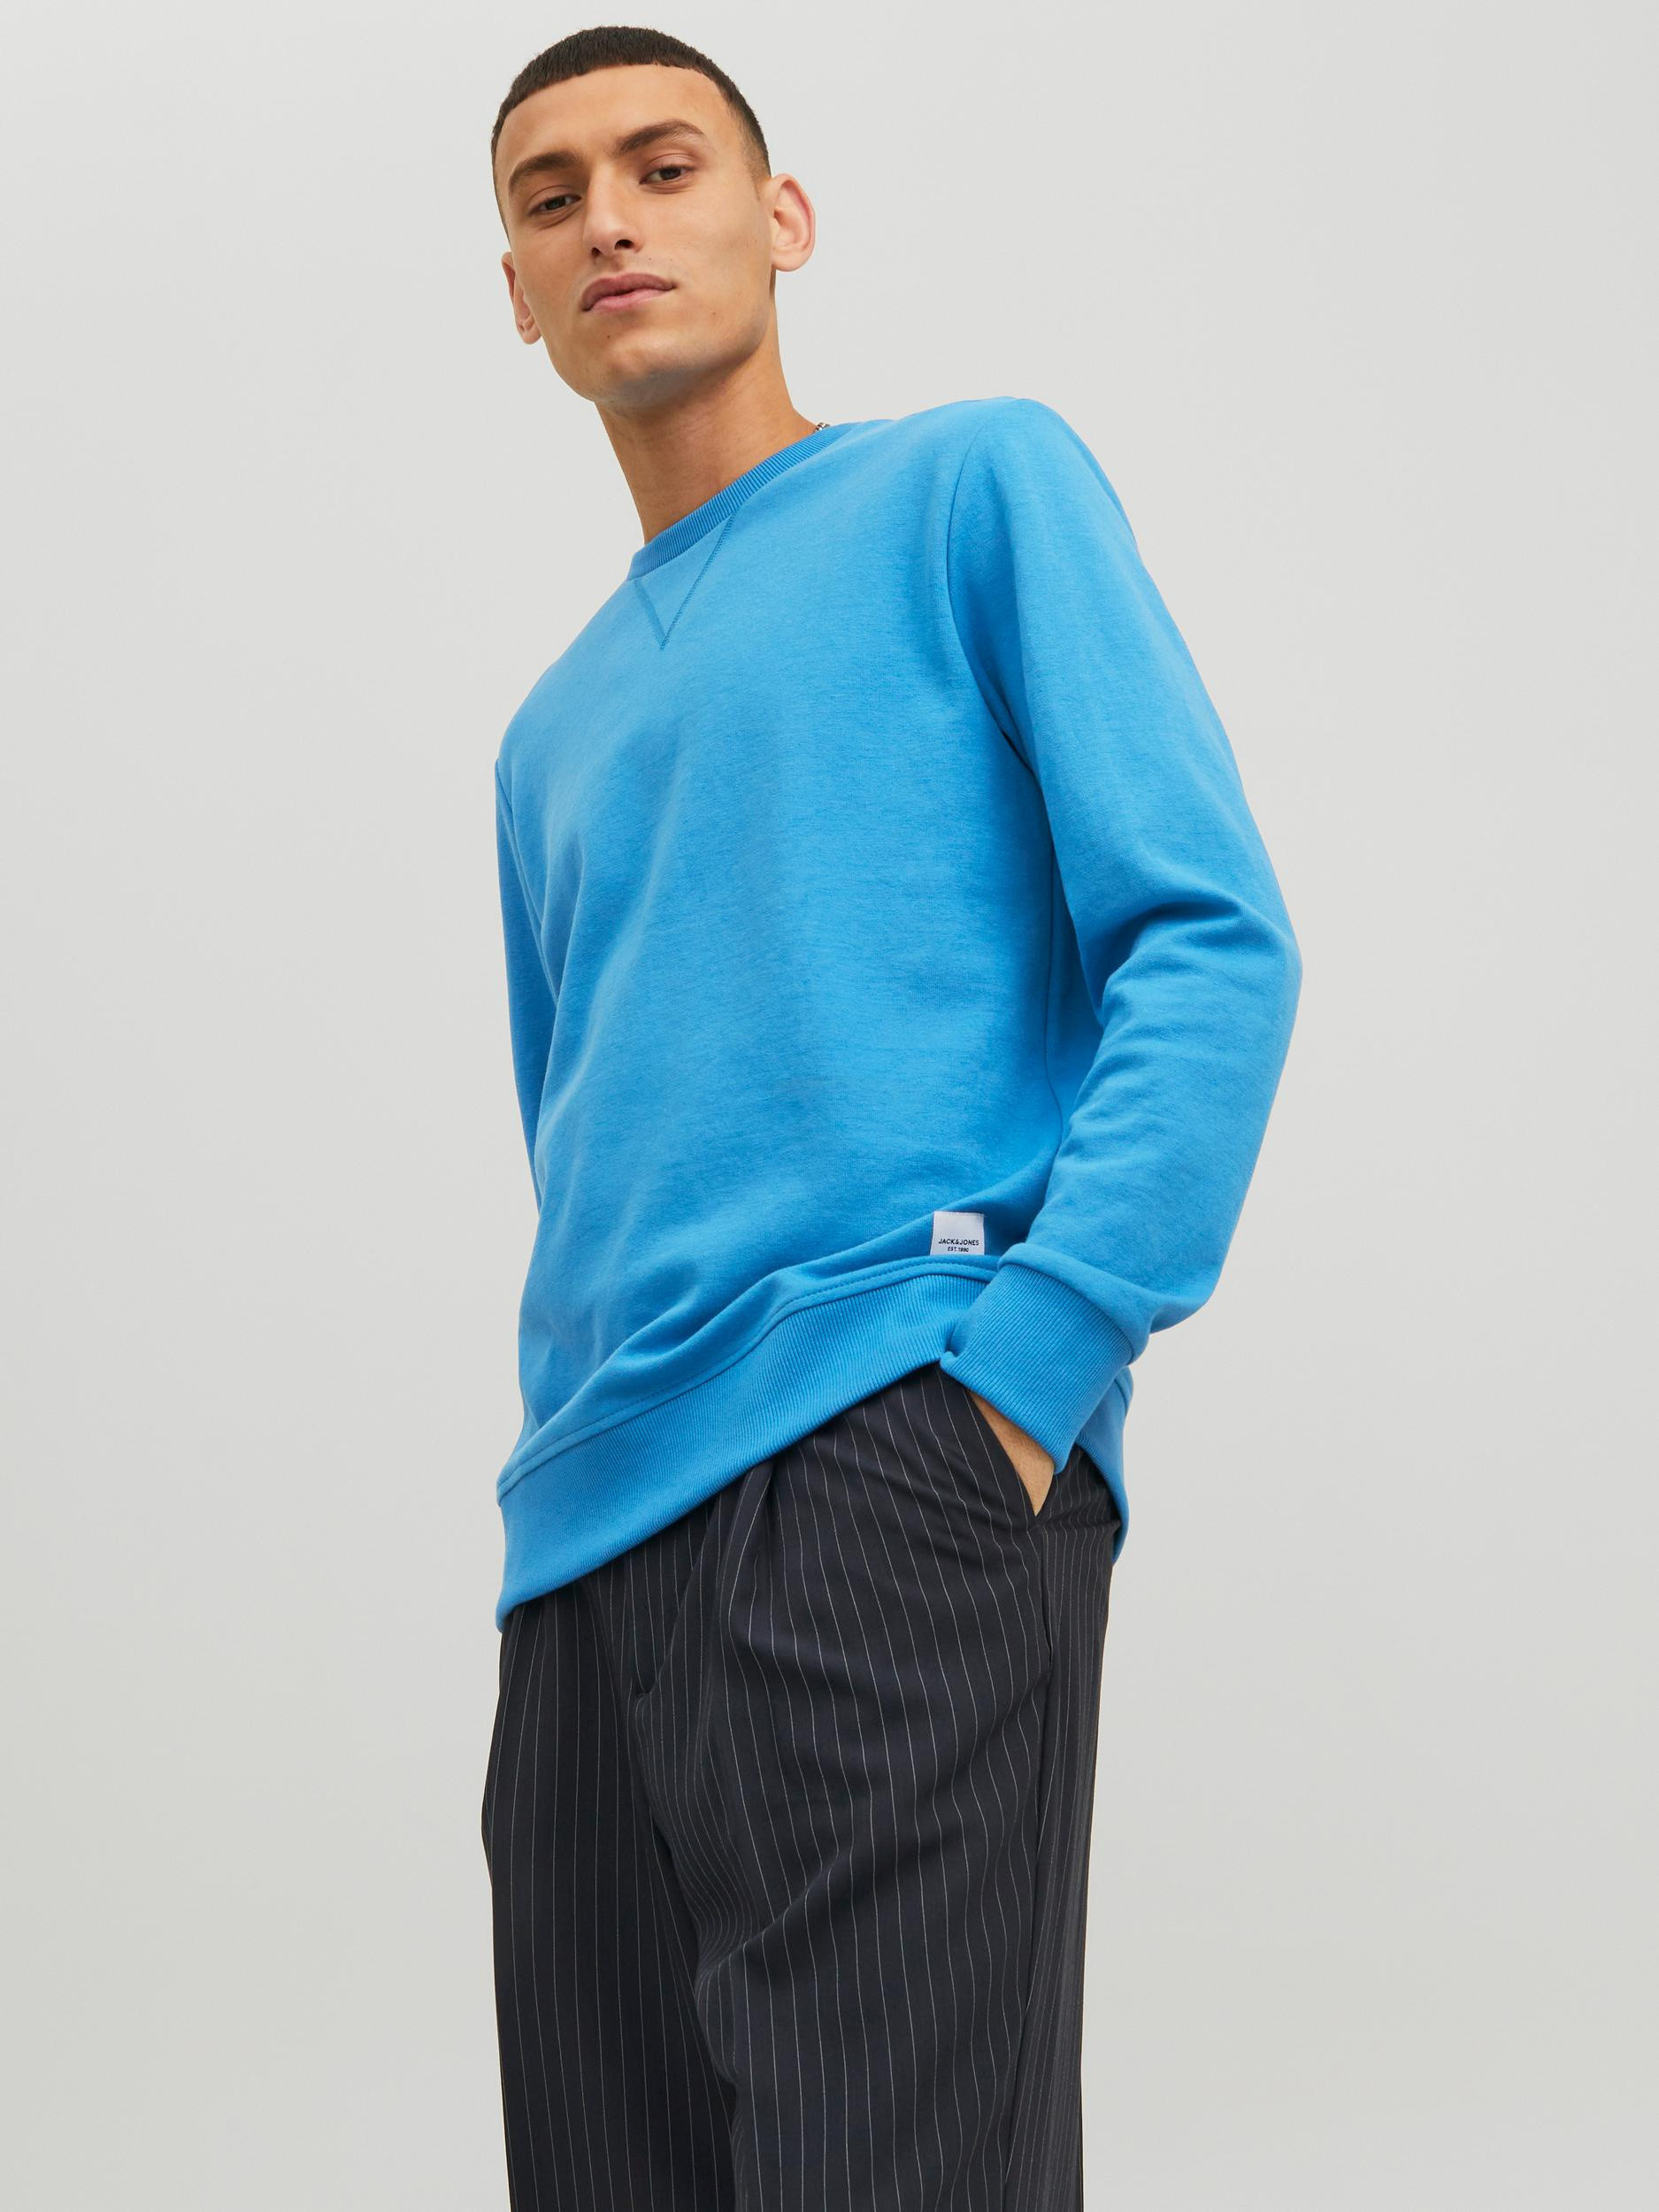 Jack & Jones - Regular-fit pullover, Light Blue, large image number 3